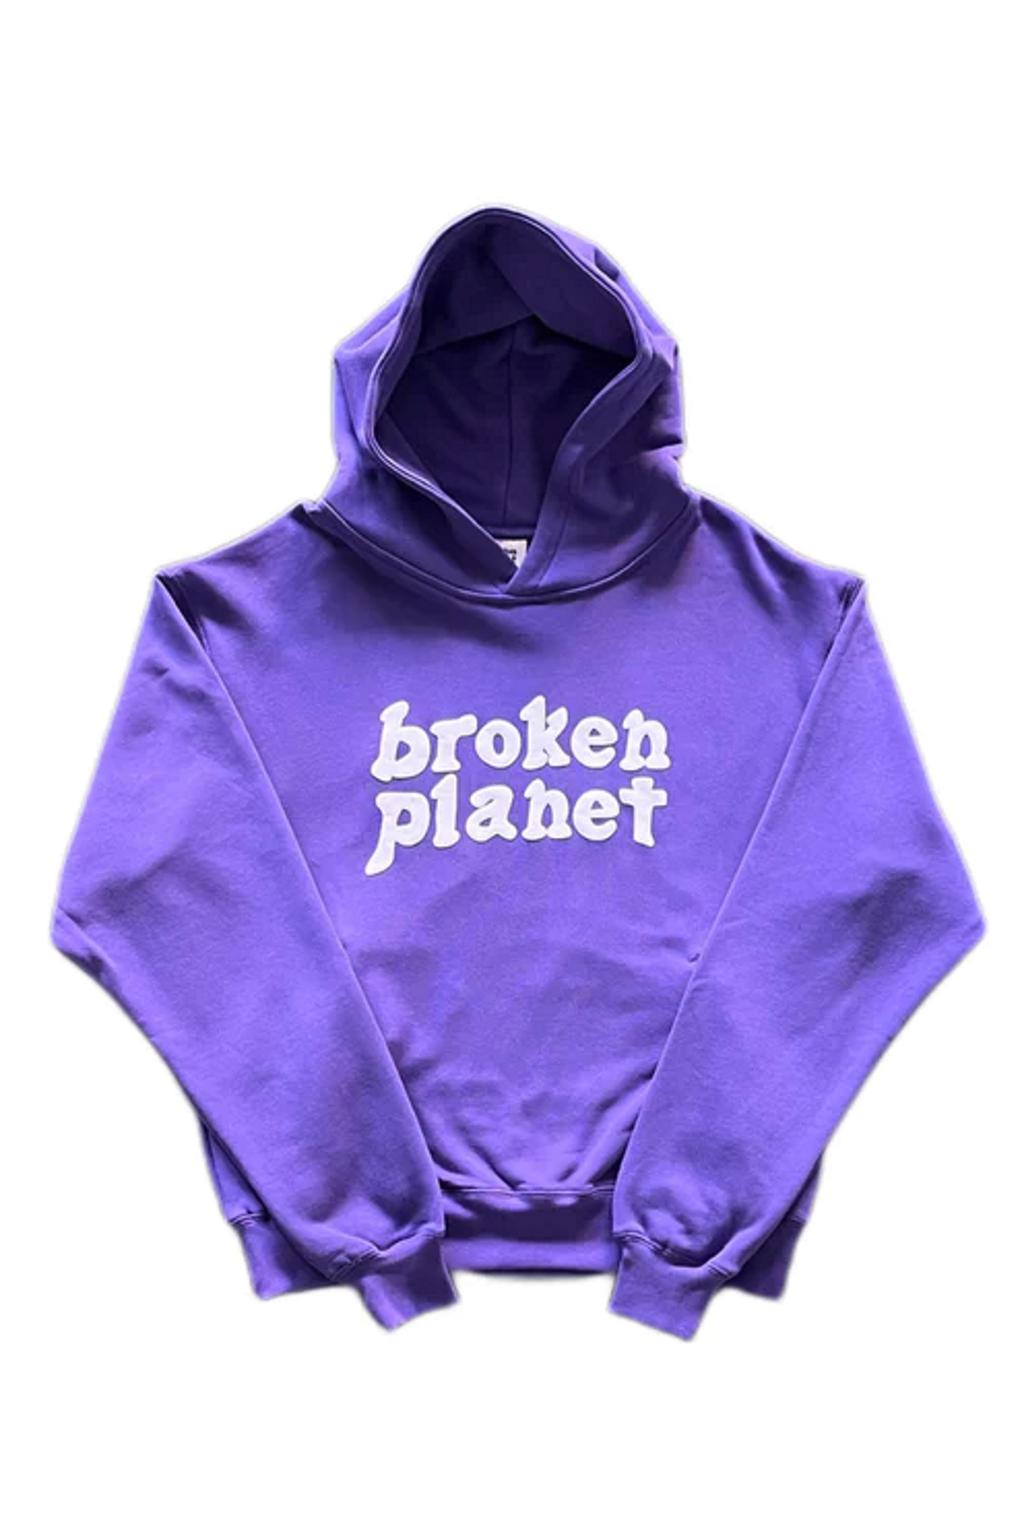 Broken Planet Hoodie  Official Broken Planet Market